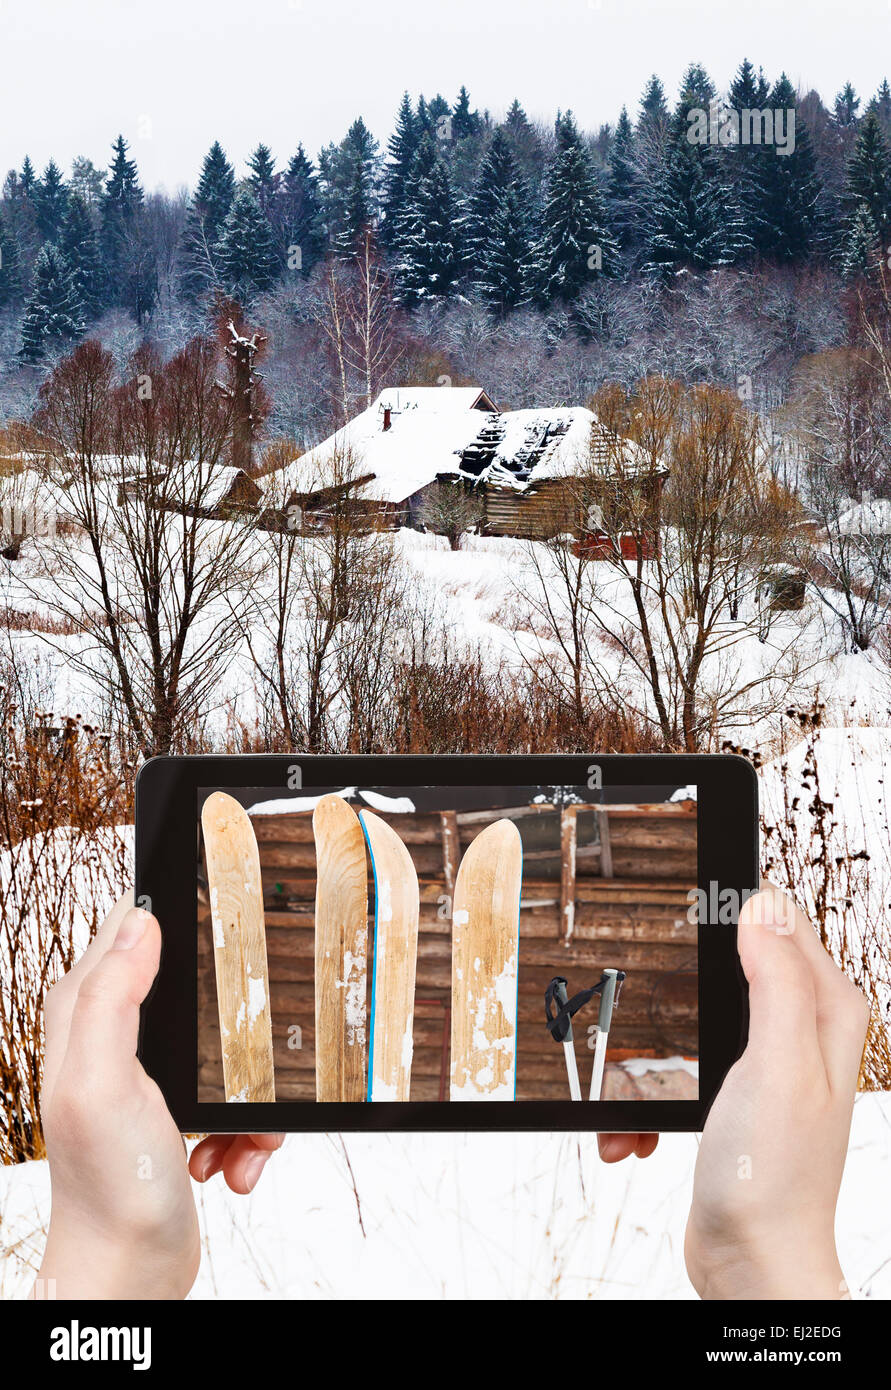 Reisen Sie Konzept - Tourist findet, das Bild von zwei Paaren von Weite im Dorf im Ski Wintertag auf Smartphone, Russland Stockfoto